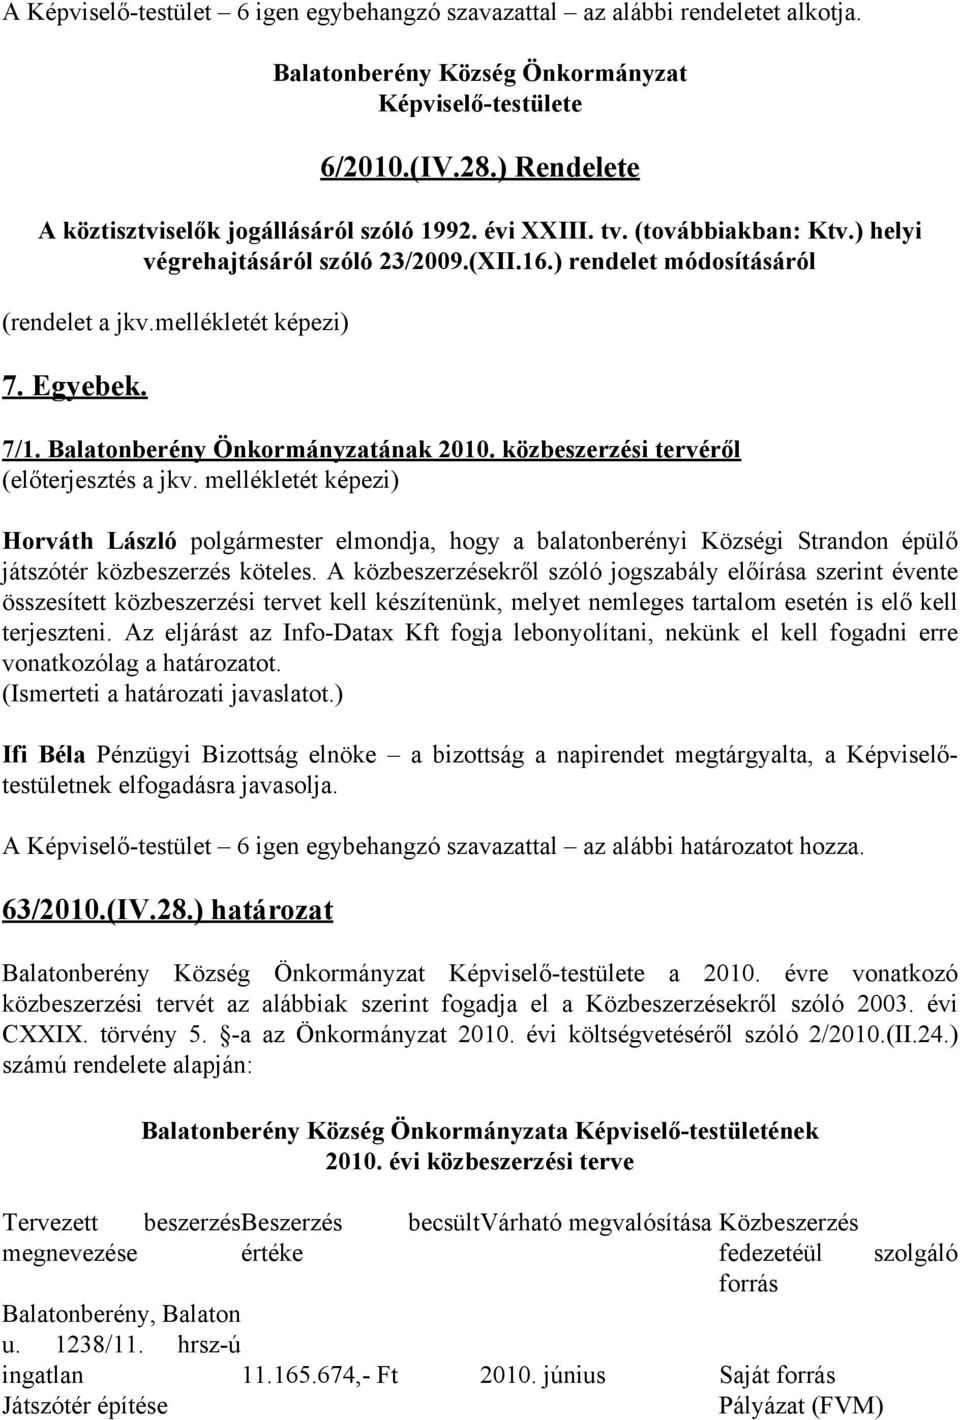 Egyebek. 7/1. Balatonberény Önkormányzatának 2010. közbeszerzési tervéről (előterjesztés a jkv.